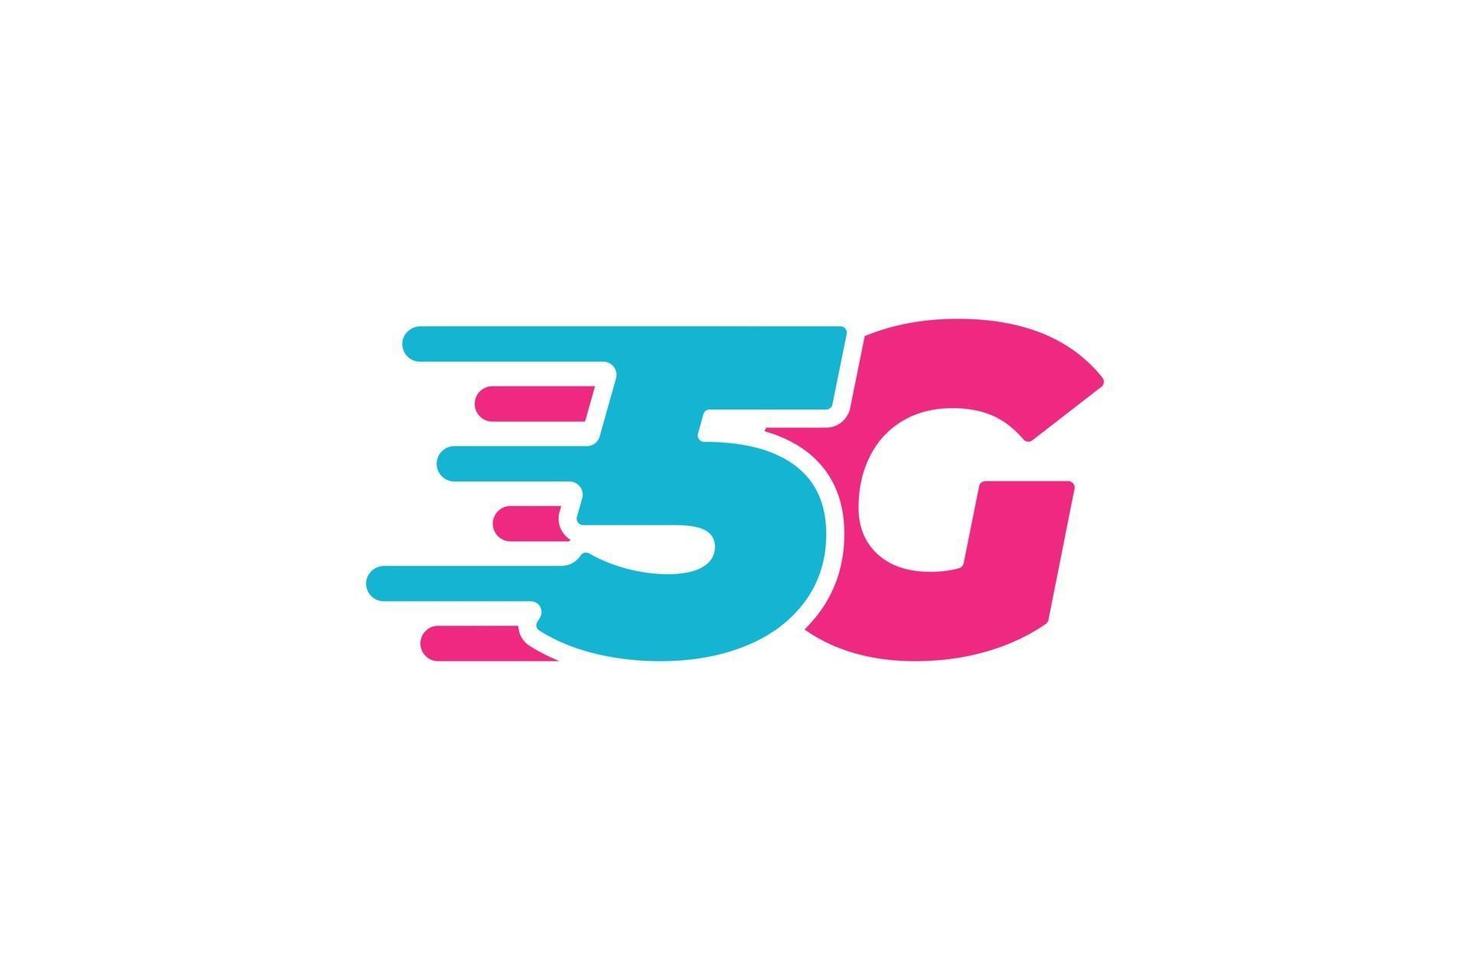 Symbole commercial de connexion réseau 5g. Icône de la technologie Internet haute vitesse sans fil de 5e génération. vecteur, 5, g, communication, emblème, conception, plat, modèle, isolé vecteur